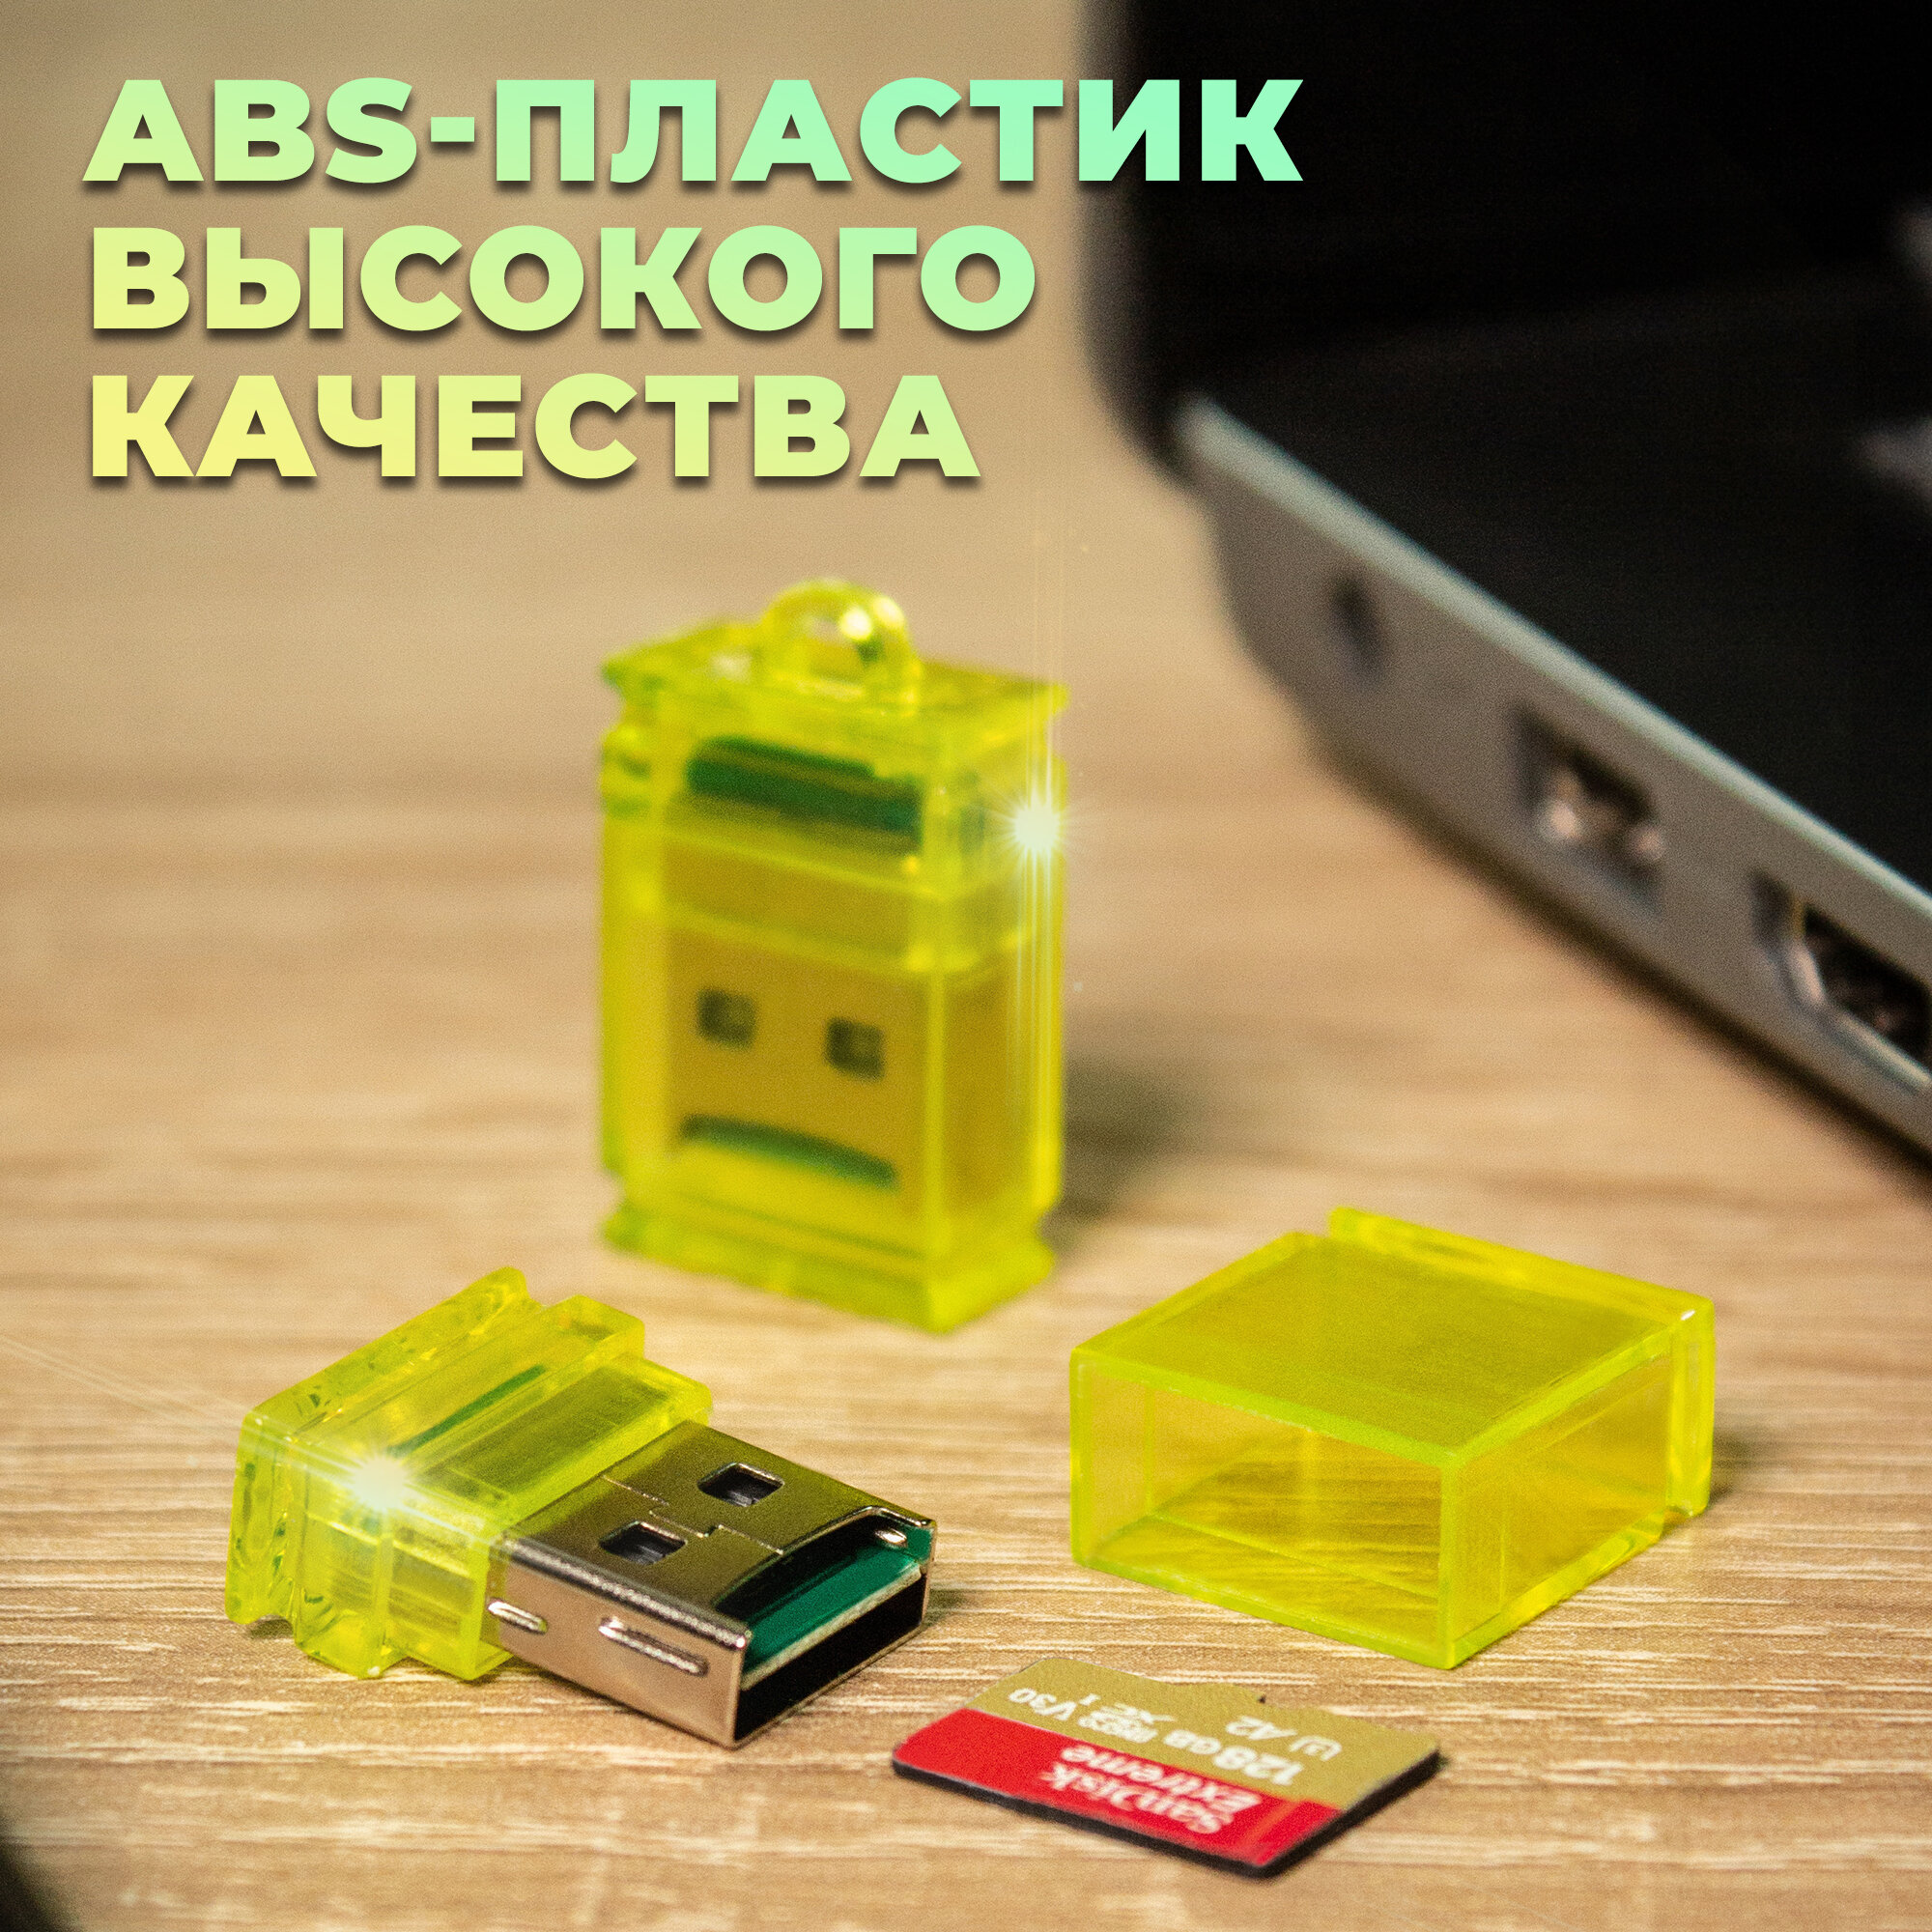 Картридер для чтения карт памяти microSD, WALKER, WCD-23, Адаптер переходник для компьютера и ноутбука, Card reader, USB-порт, карт ридер, желтый